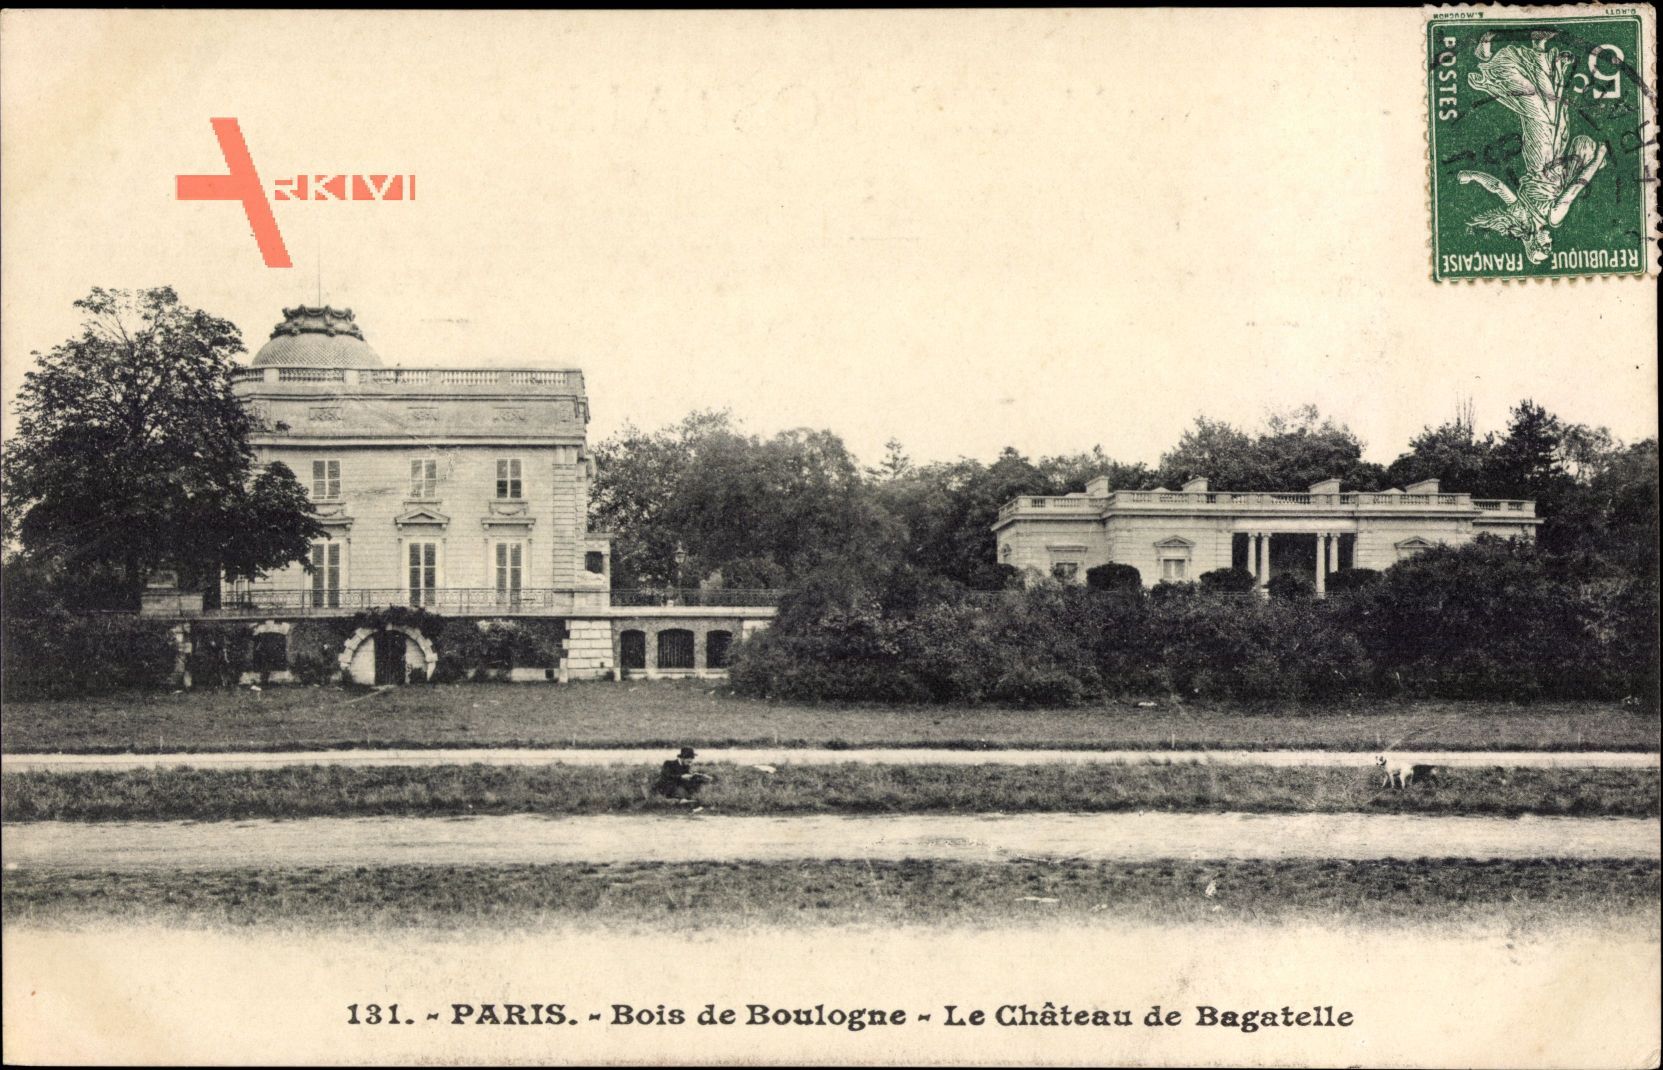 Paris, Bois de Boulogne, Le Château de Bagatelle, Schloss